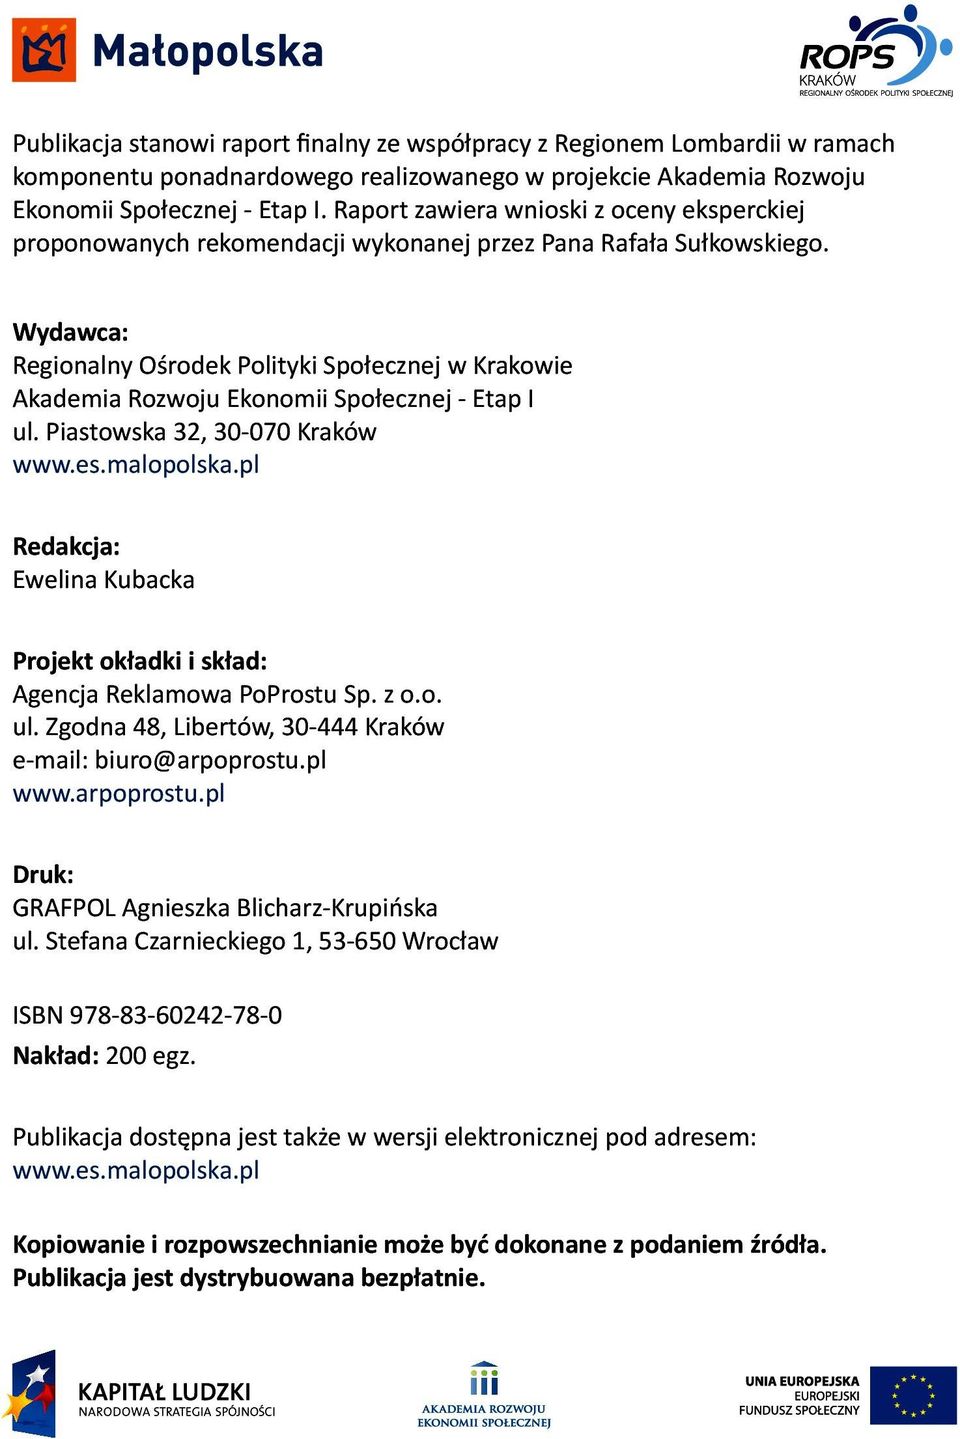 Wydawca: Regionalny Ośrodek Polityki Społecznej w Krakowie Akademia Rozwoju Ekonomii Społecznej - Etap I ul. Piastowska 32, 30-070 Kraków www.es.malopolska.